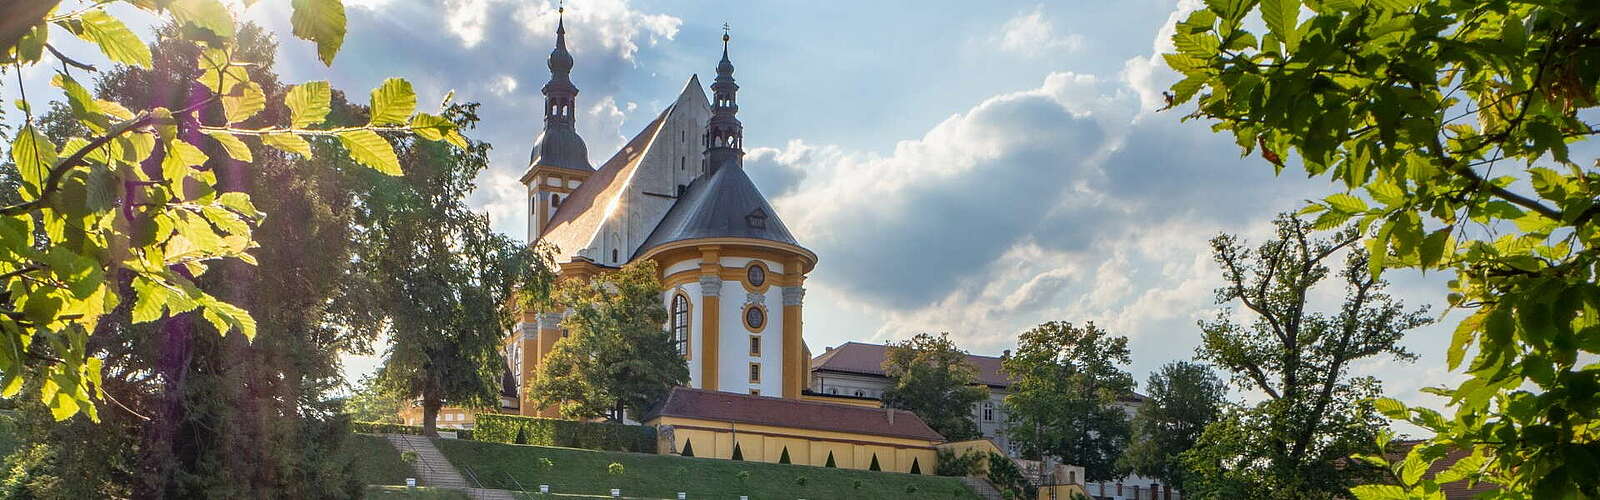 Kloster Neuzelle,
        
    

        Foto: TMB-Fotoarchiv/Steffen Lehmann